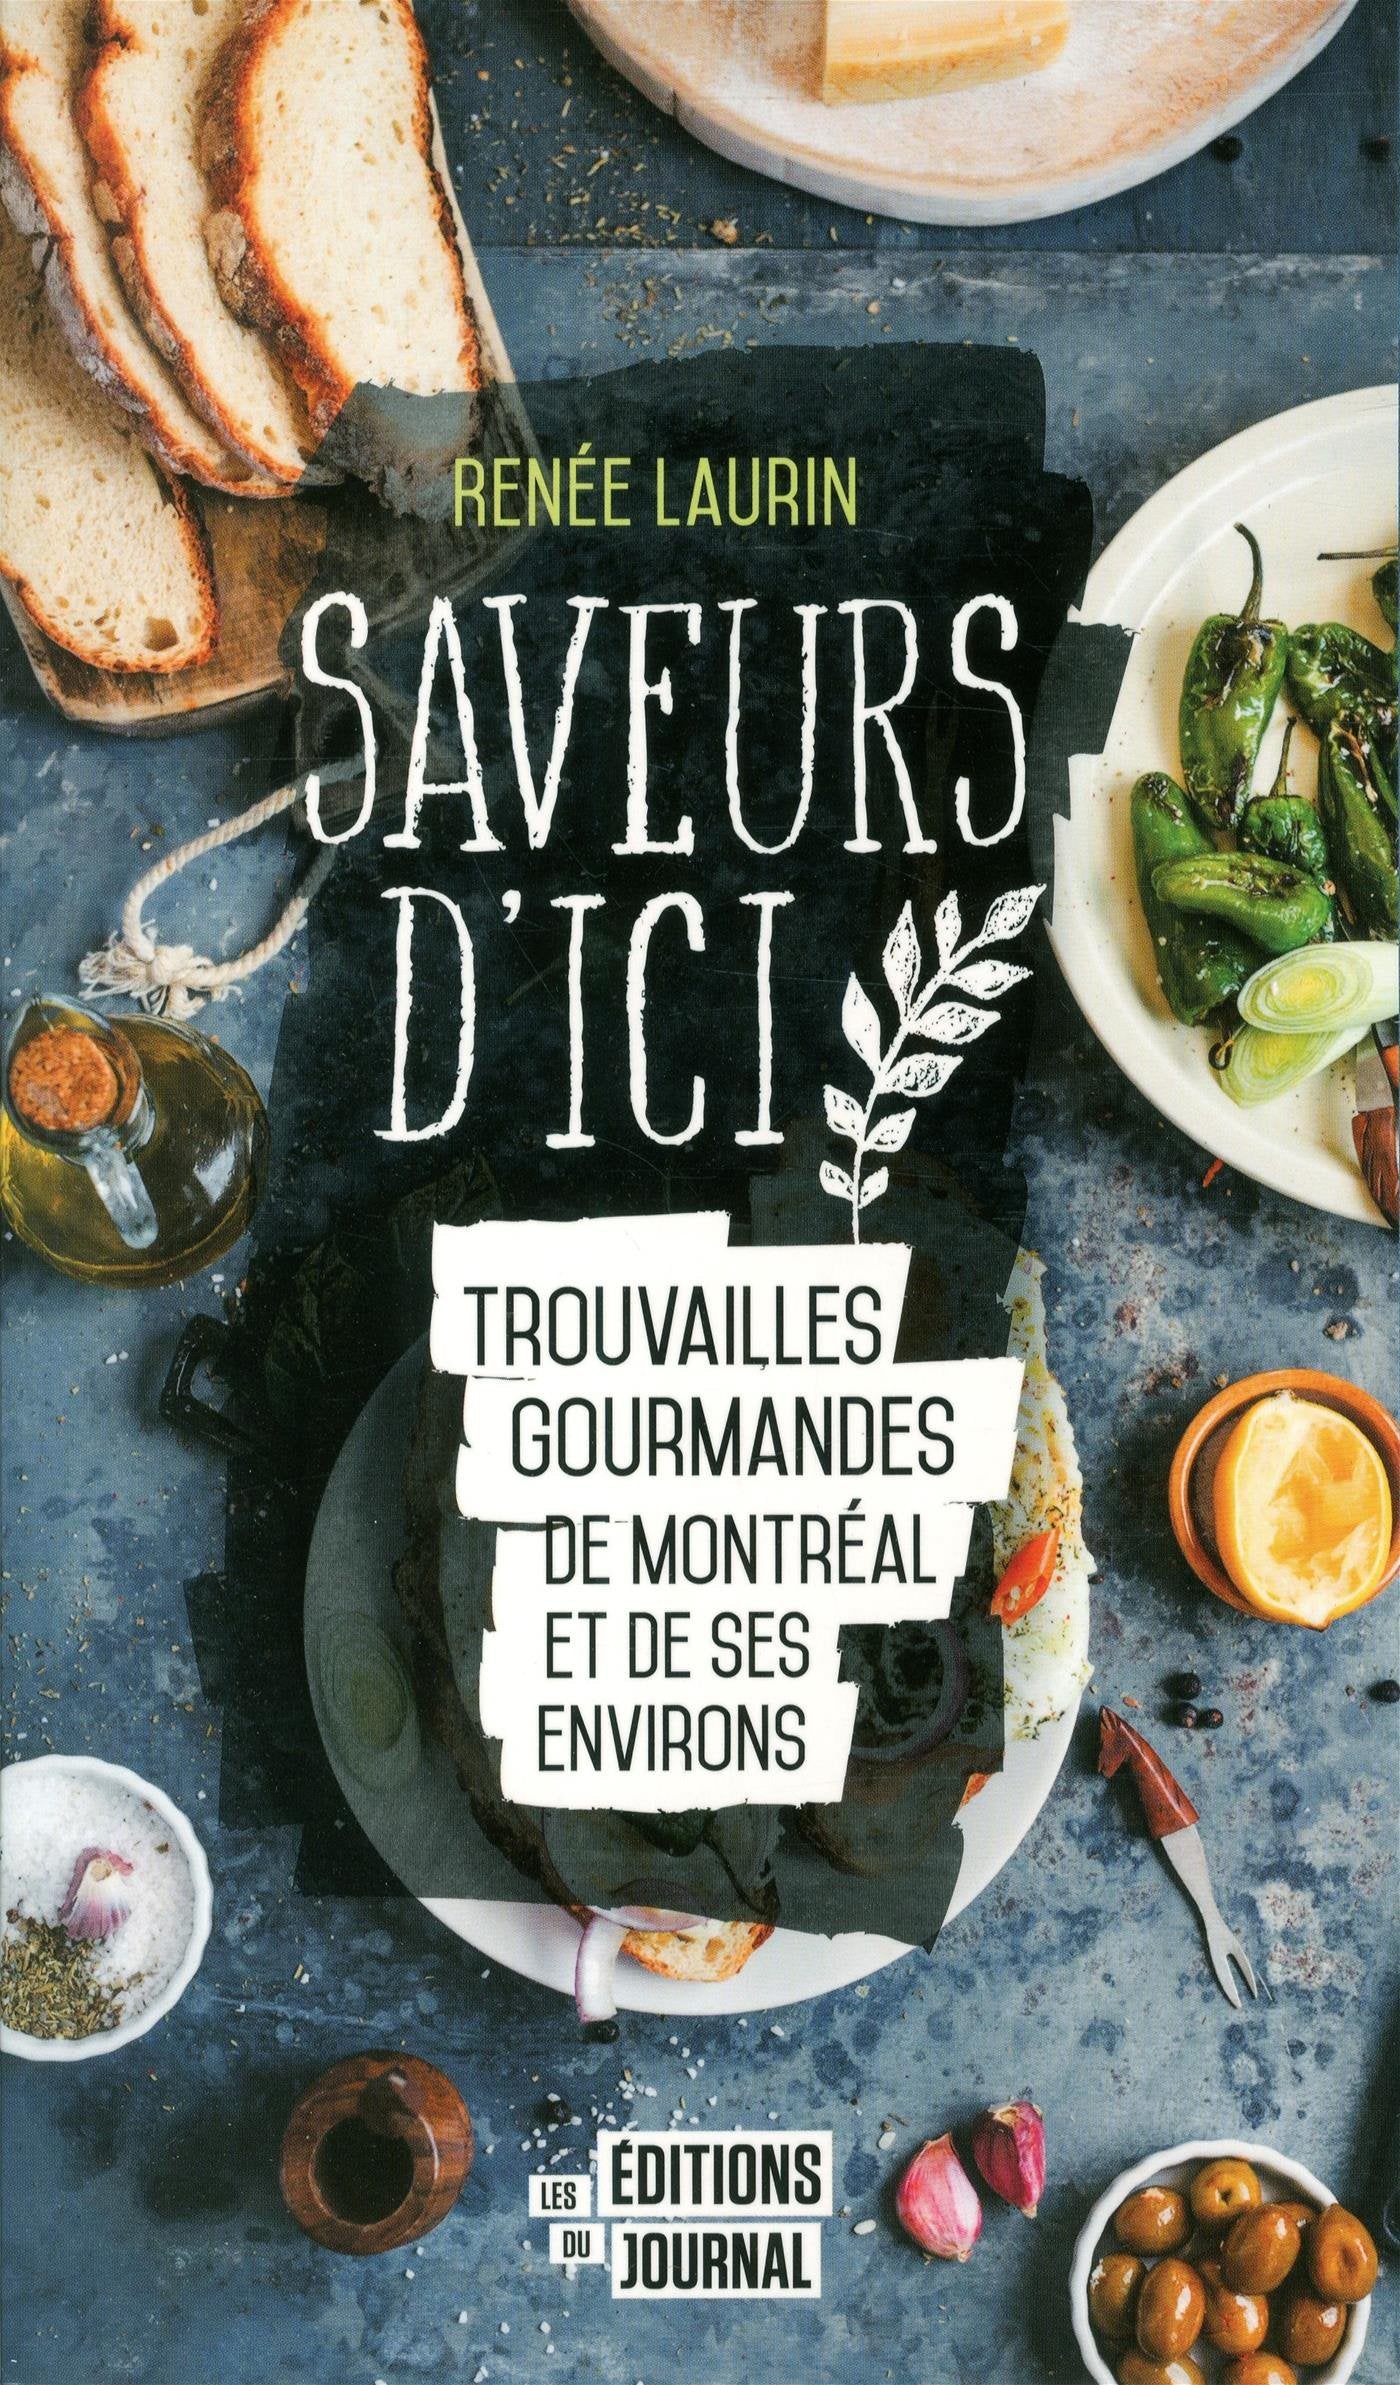 Saveurs d'ici: Trouvailles gourmandes de Montréal et de ses environs - Renée Laurin